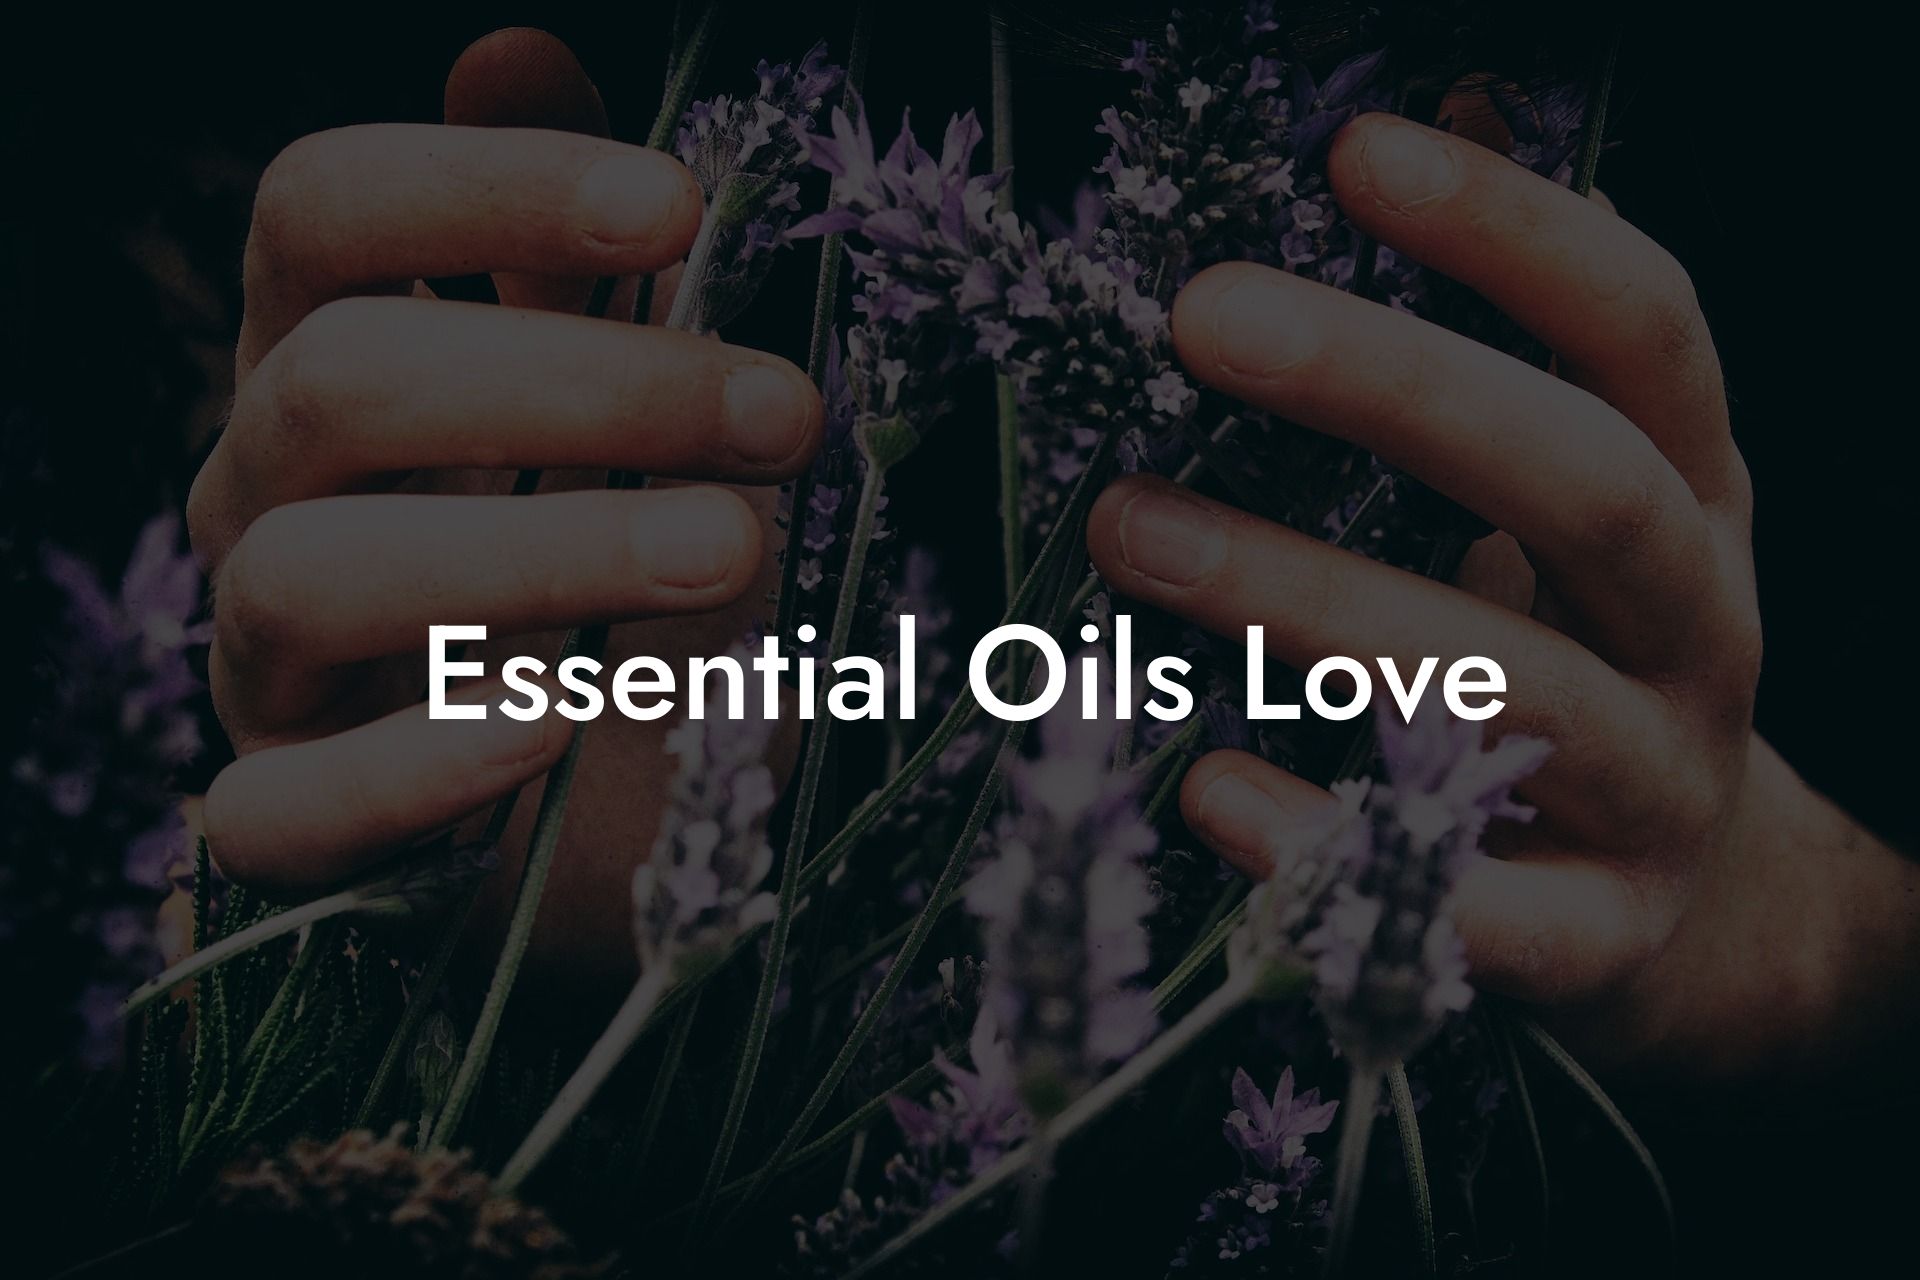 Essential Oils Love